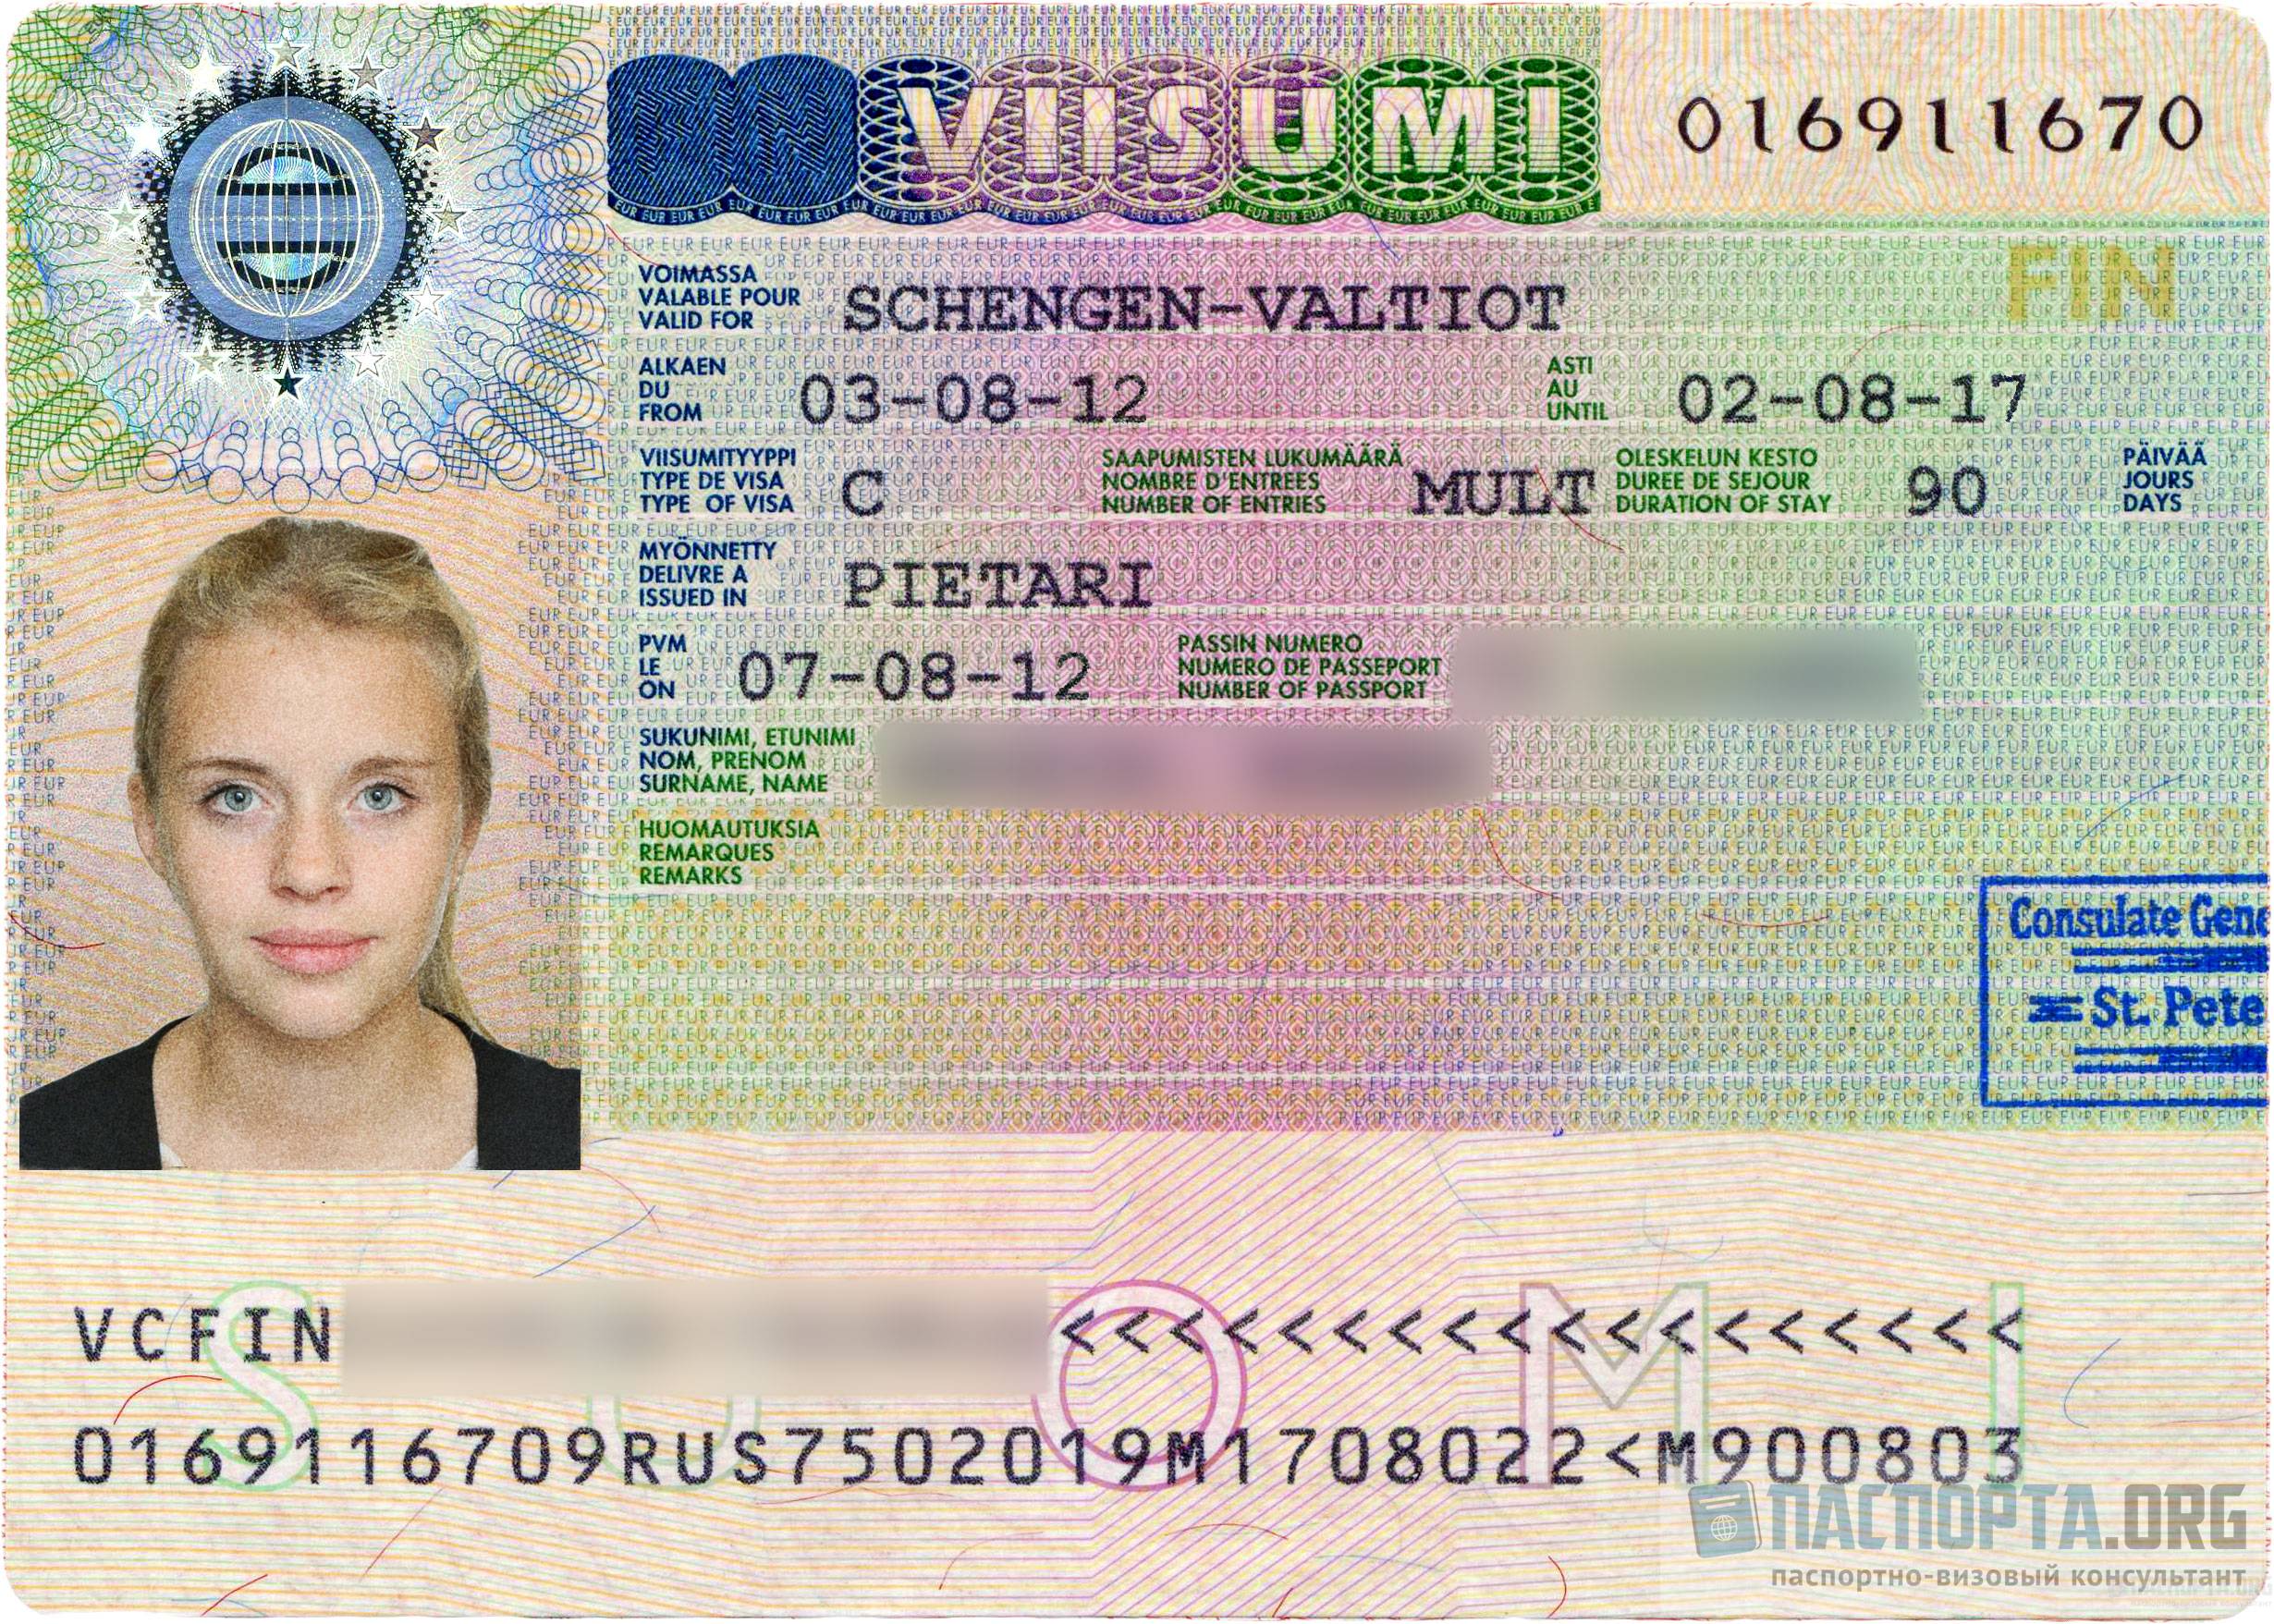 Глупые вопросы о шенгенской визе, которые вы стеснялись задать